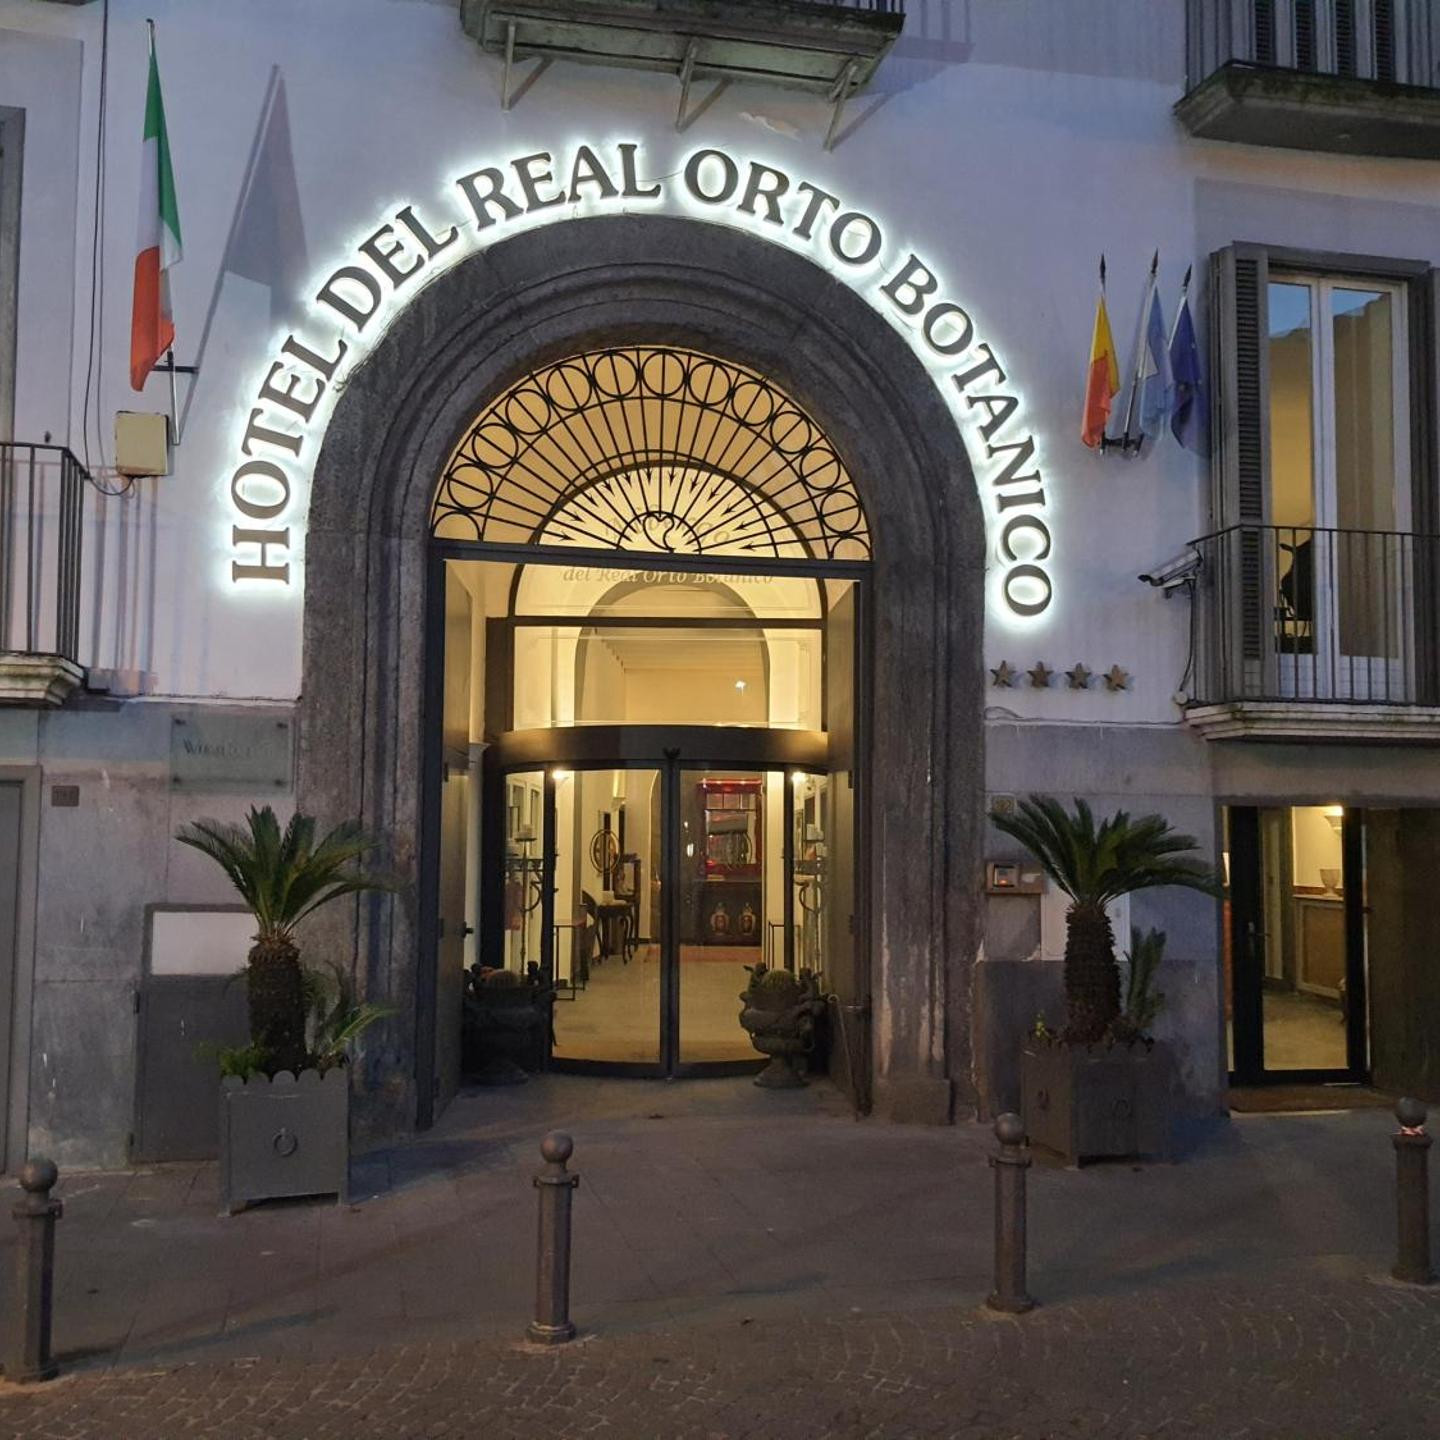 Hotel Real Ortobotanico